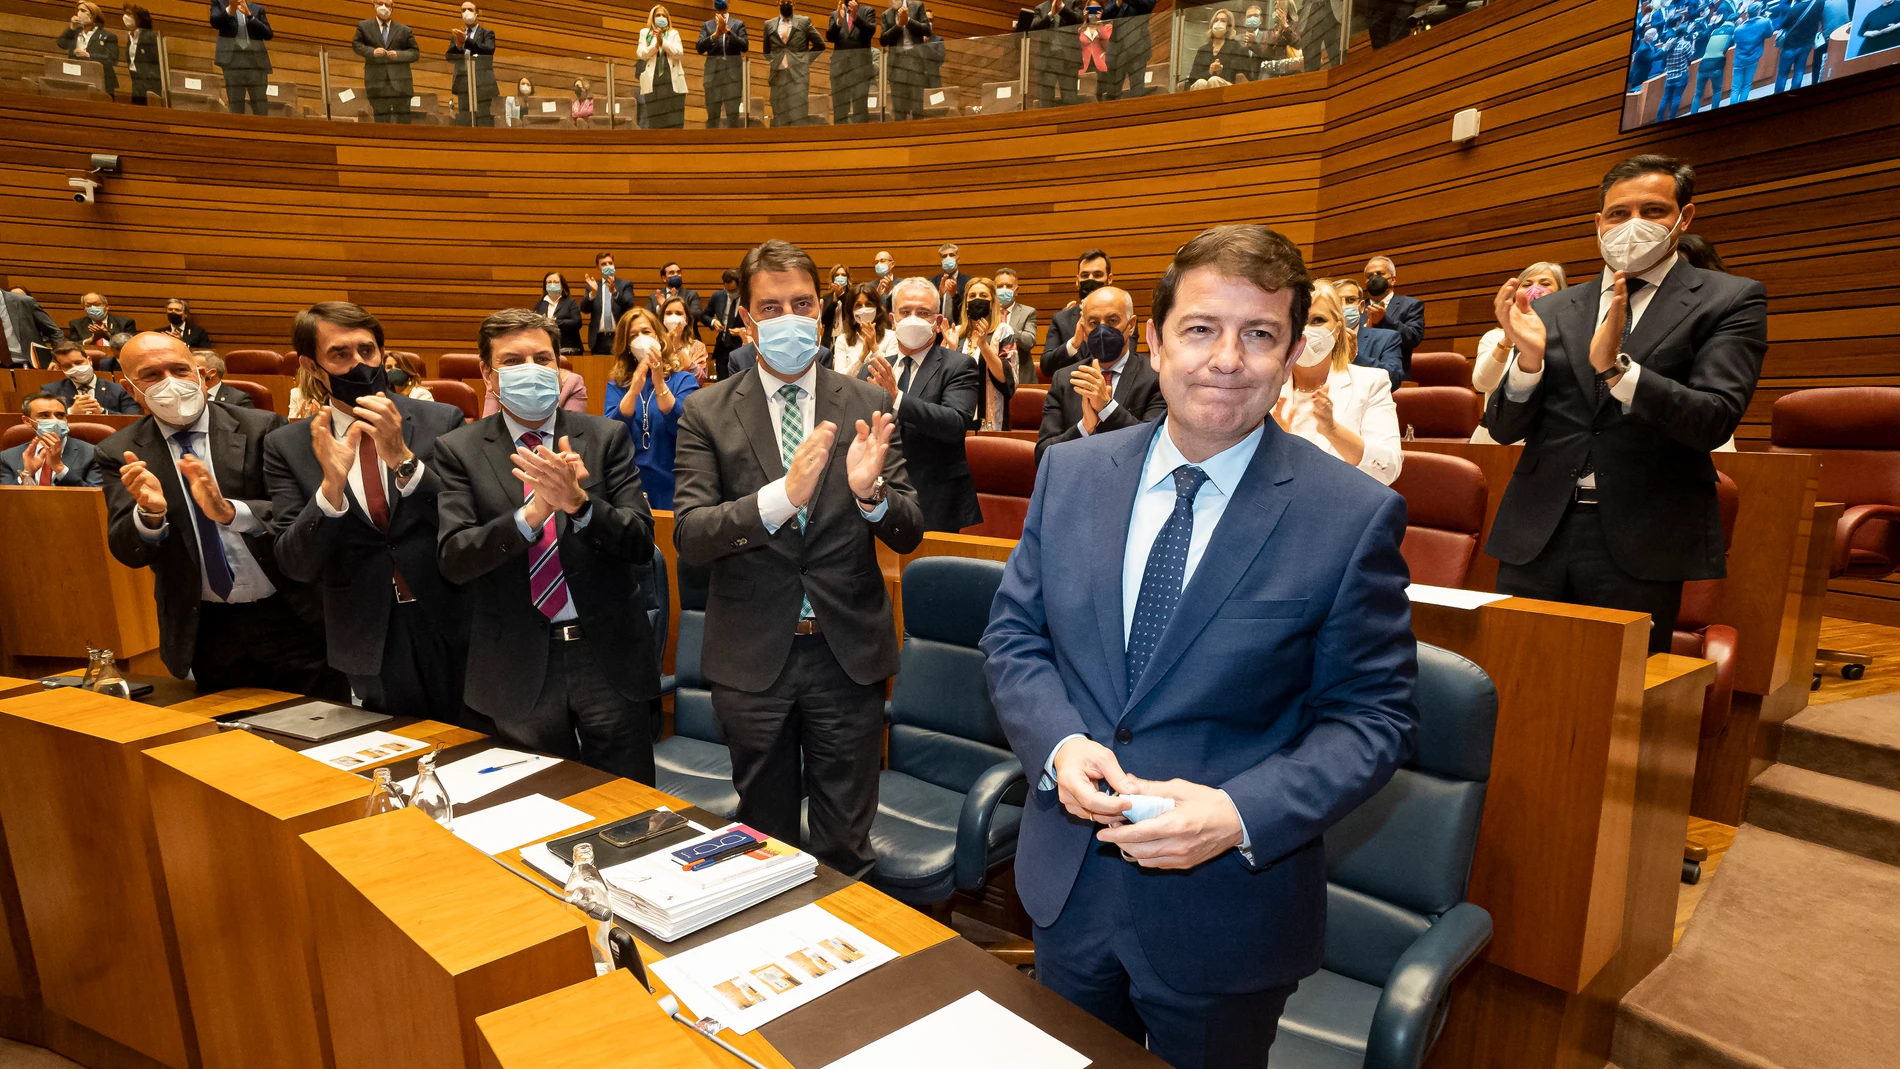 El presidente de Castilla y León electo, Alfonso Fernández Mañueco, recibe el aplauso de la bancada del PP tras recibir el apoyo mayoritario de las Cortes regionales